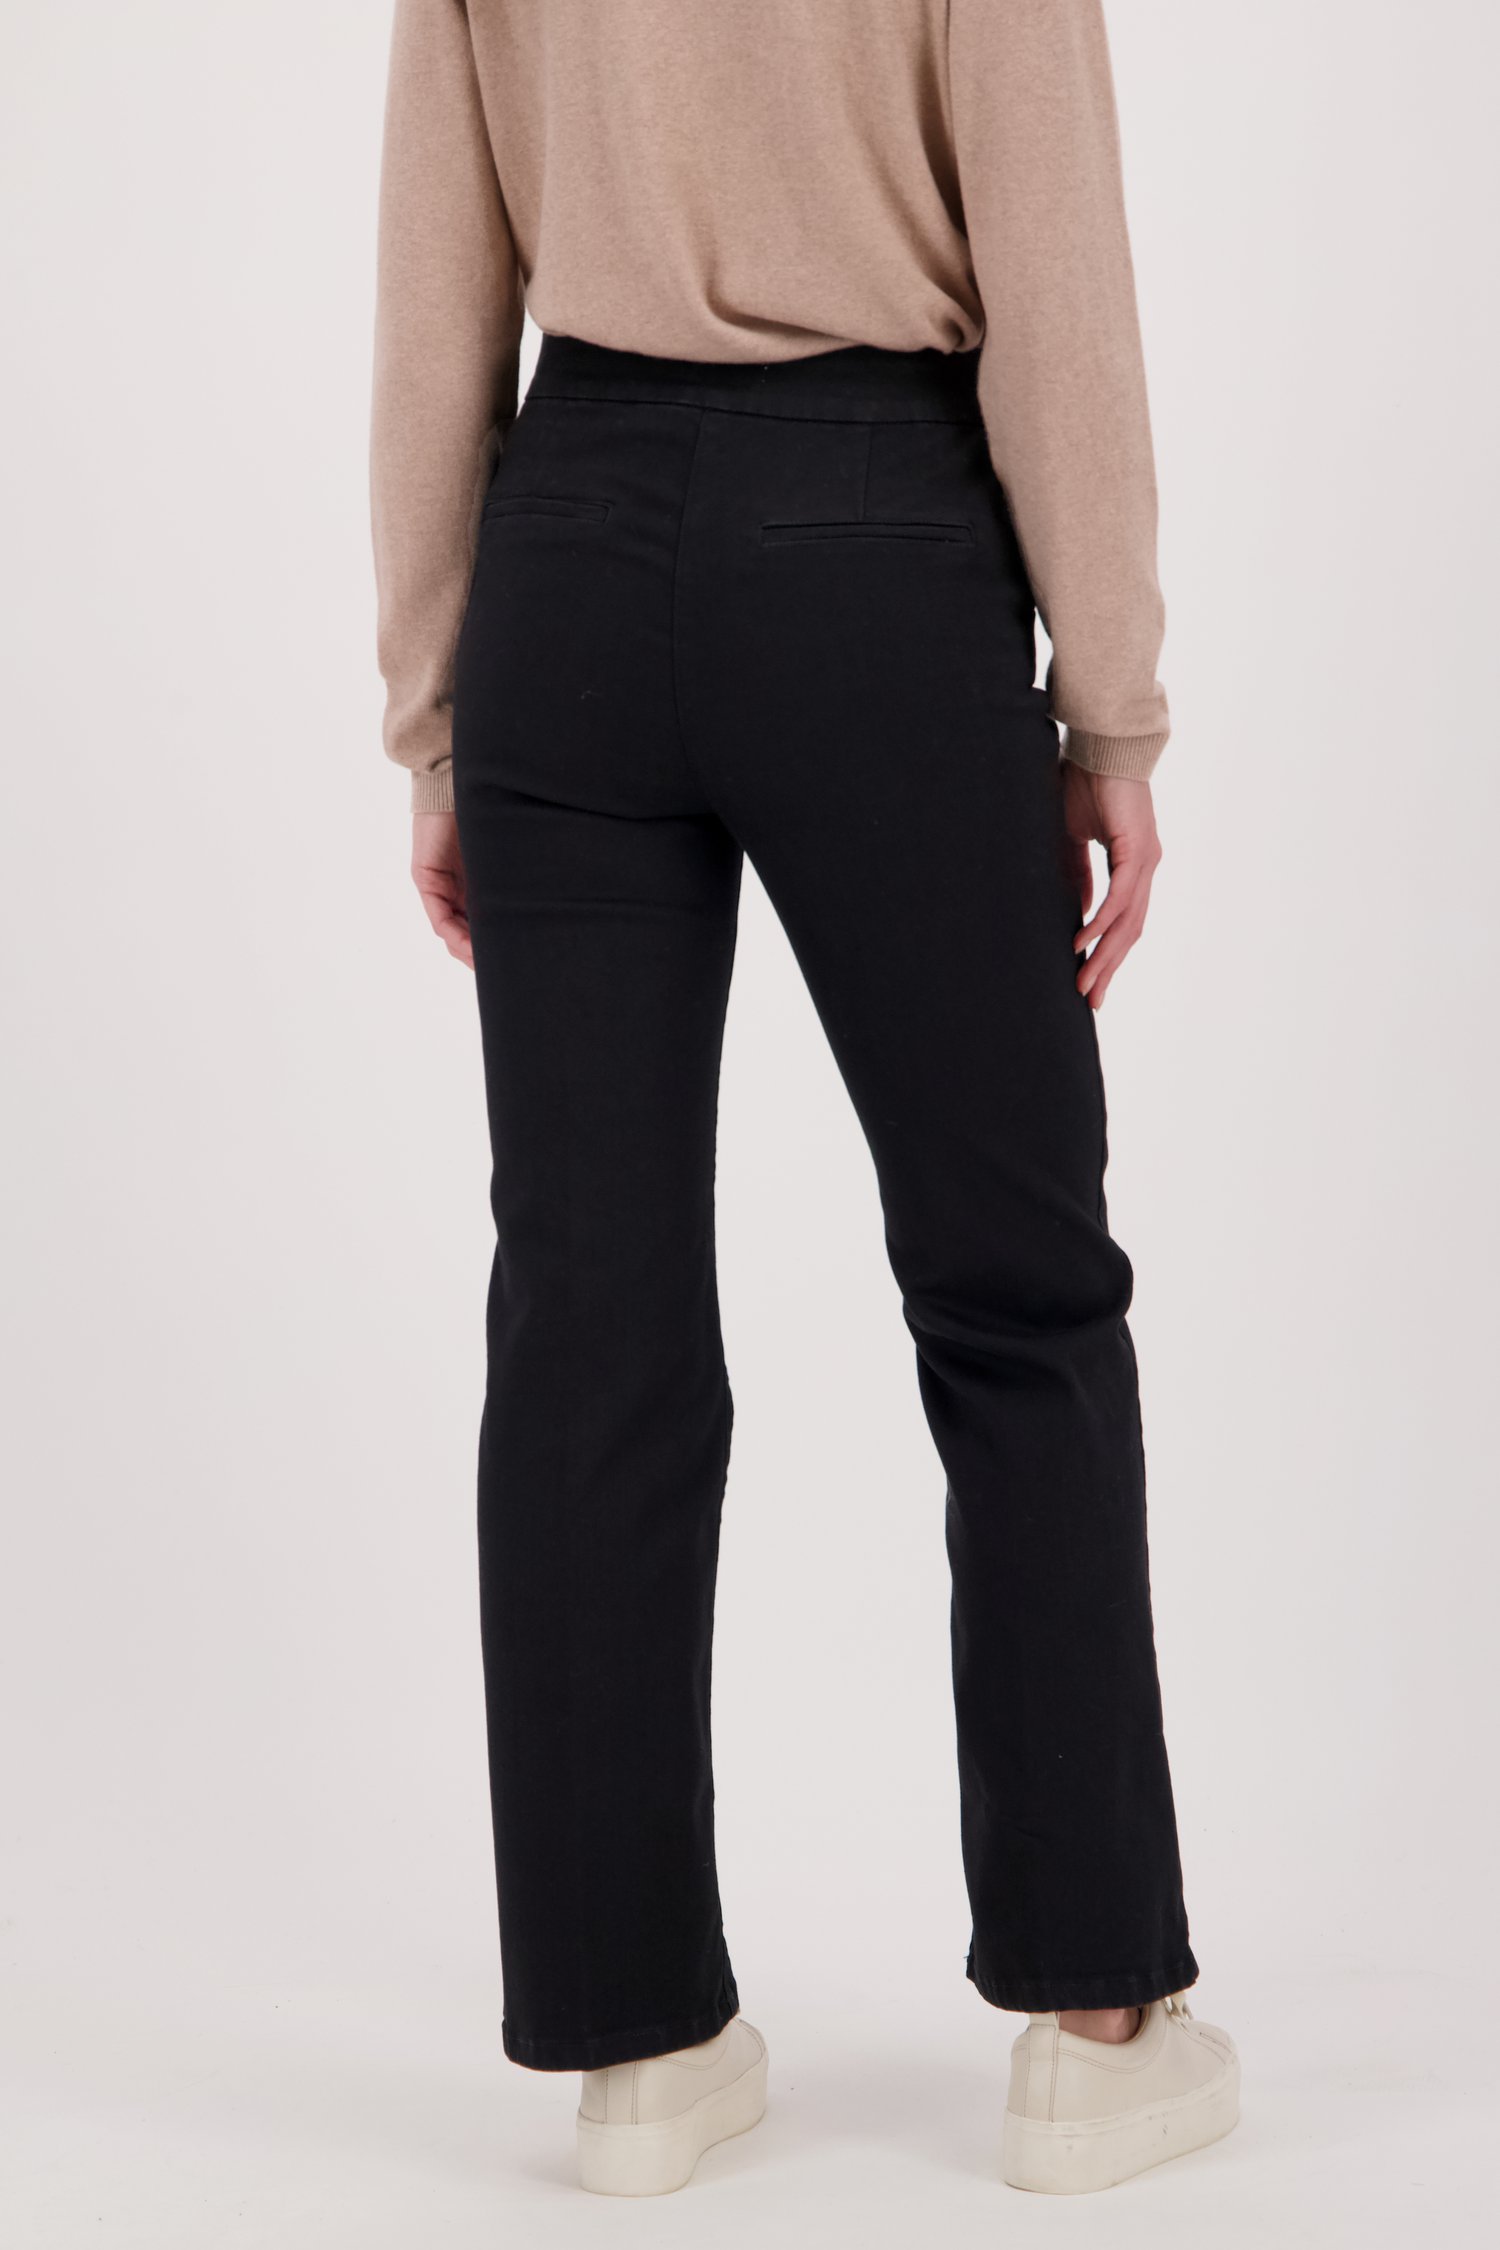 Zwarte jeans - straight fit van Liberty Island Denim voor Dames